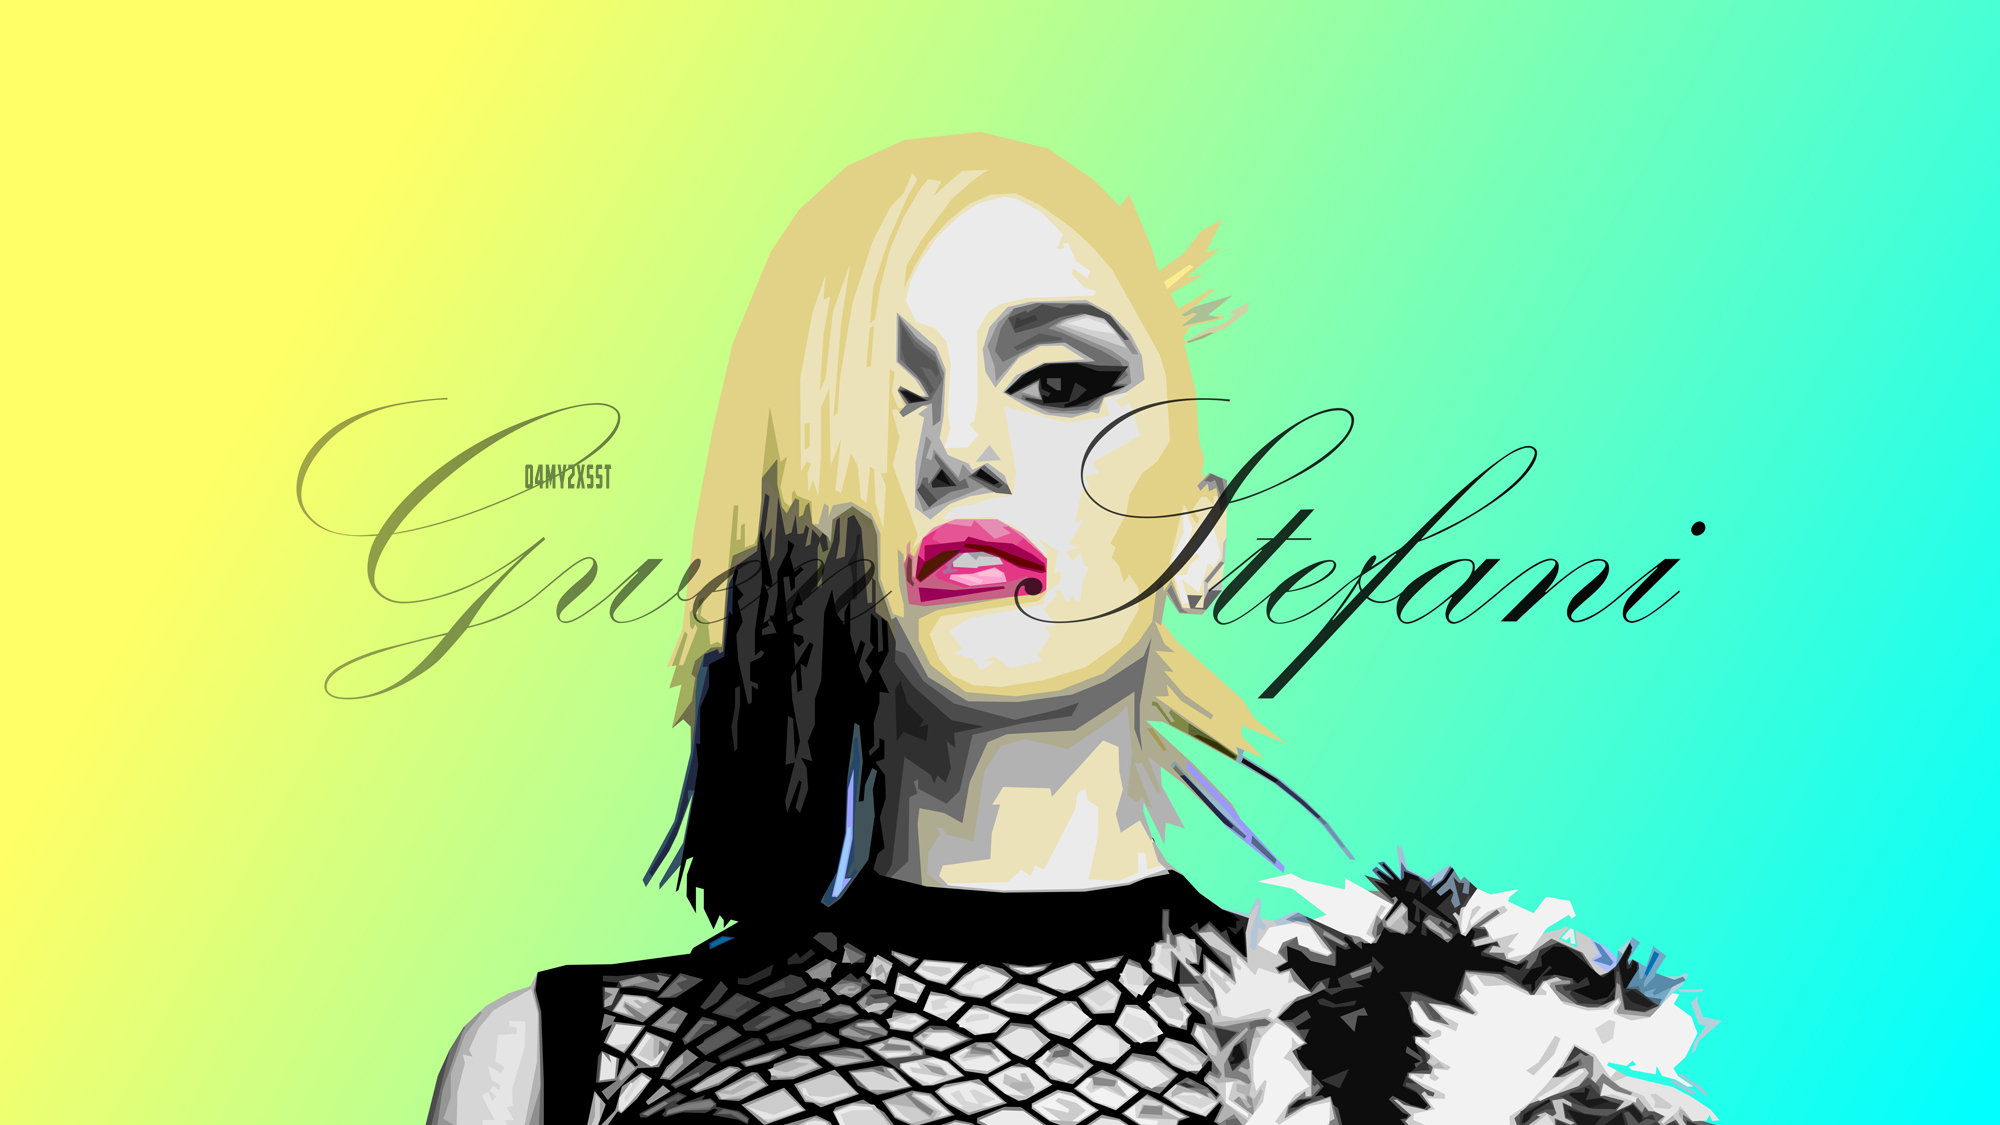 Actress Artistic Celebrity Gwen Stefani Portrait Singer 2000x1125